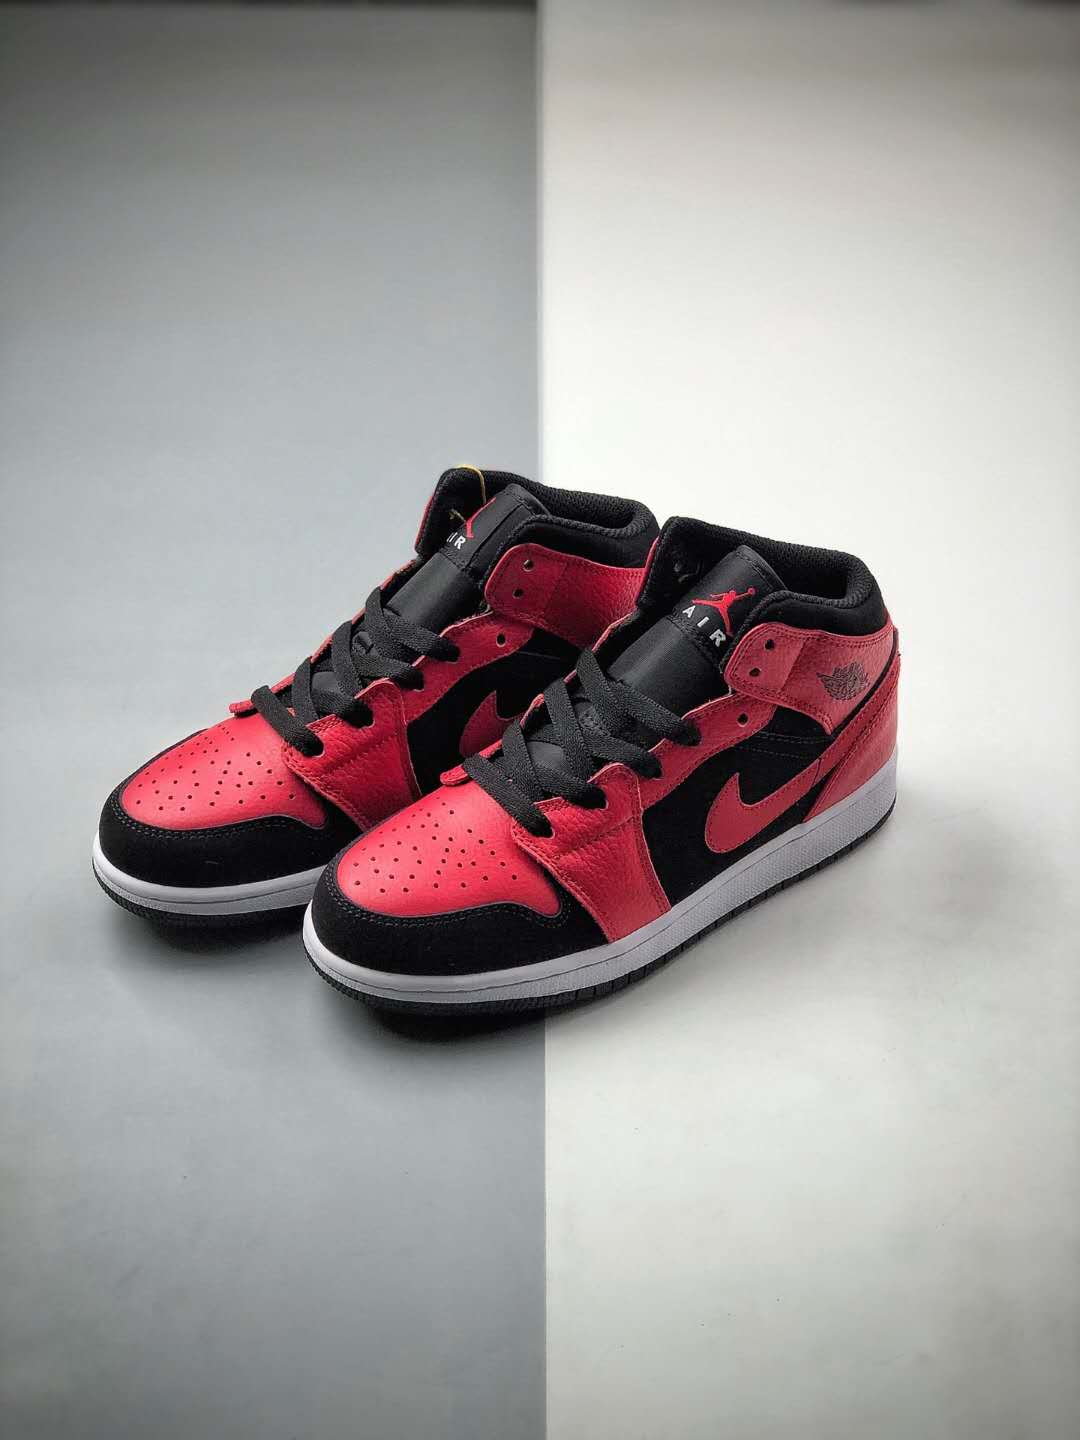 Air Jordan 1 Mid 'Black Gym Red' 554725-054 - Premium Sneakers for Style-conscious Men